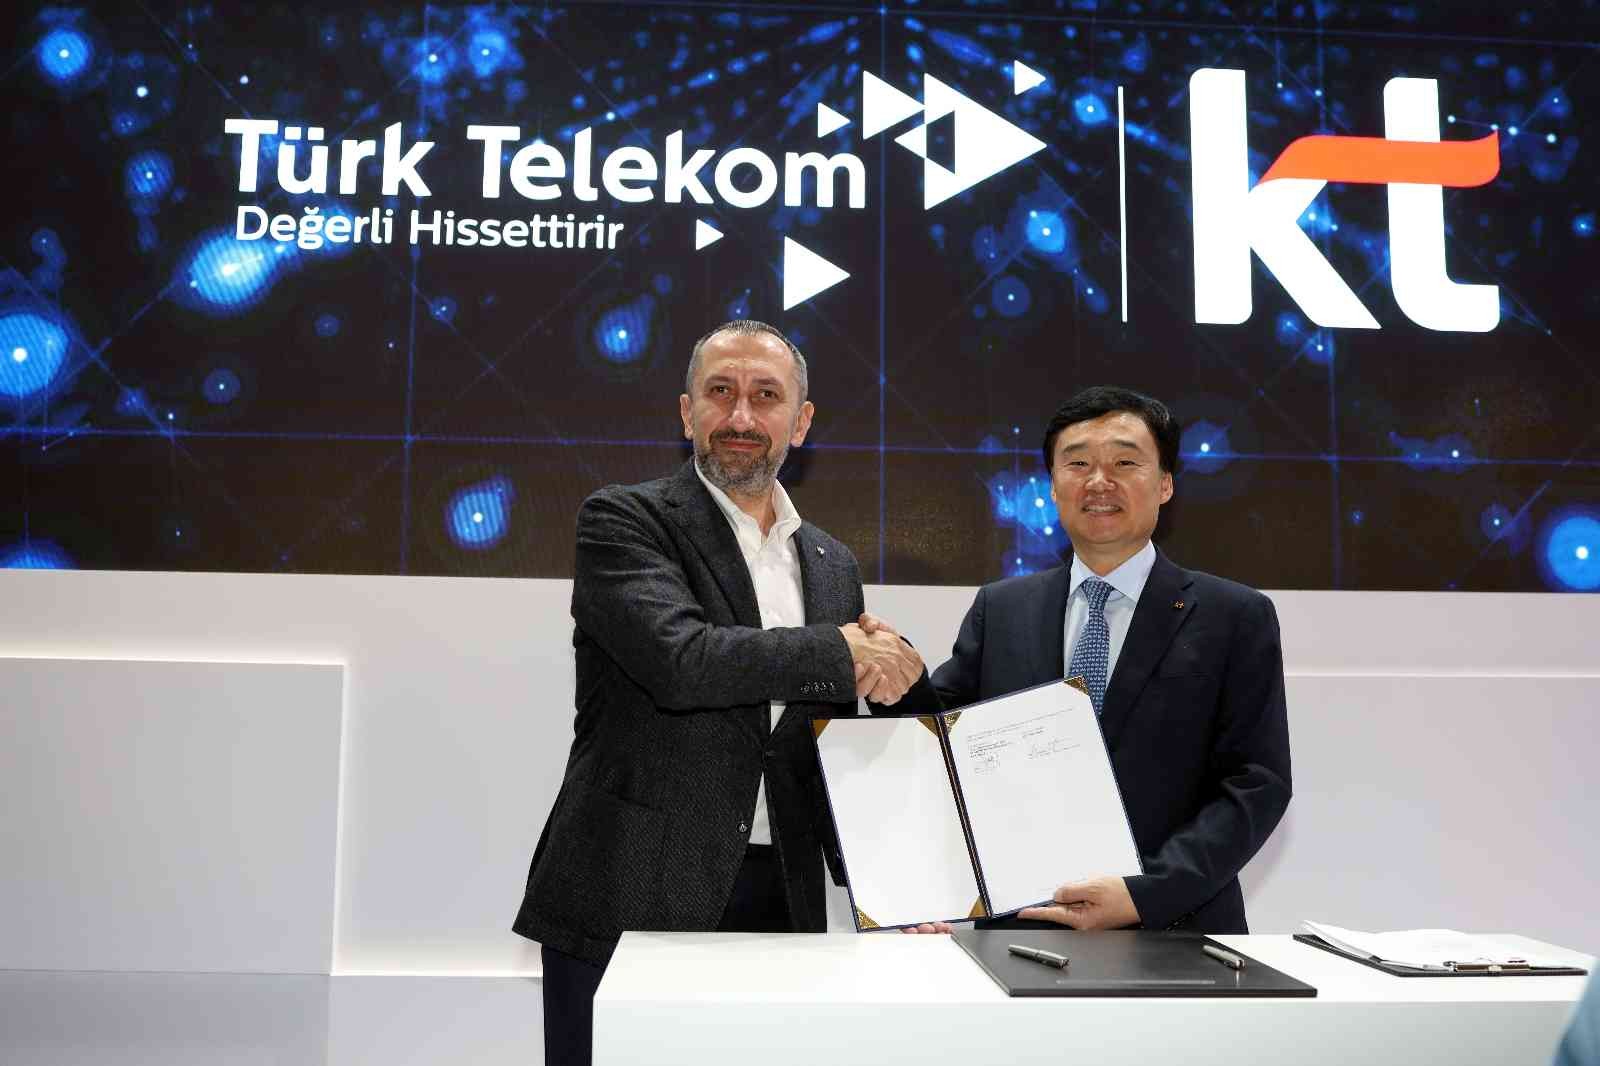 Türk Telekom, GSMA Mobil Dünya Kongresi kapsamında Korea Telecom ile imzaladığı anlaşmayla 5G ve Nesnelerin İnterneti (IoT) tabanlı uygulama ...